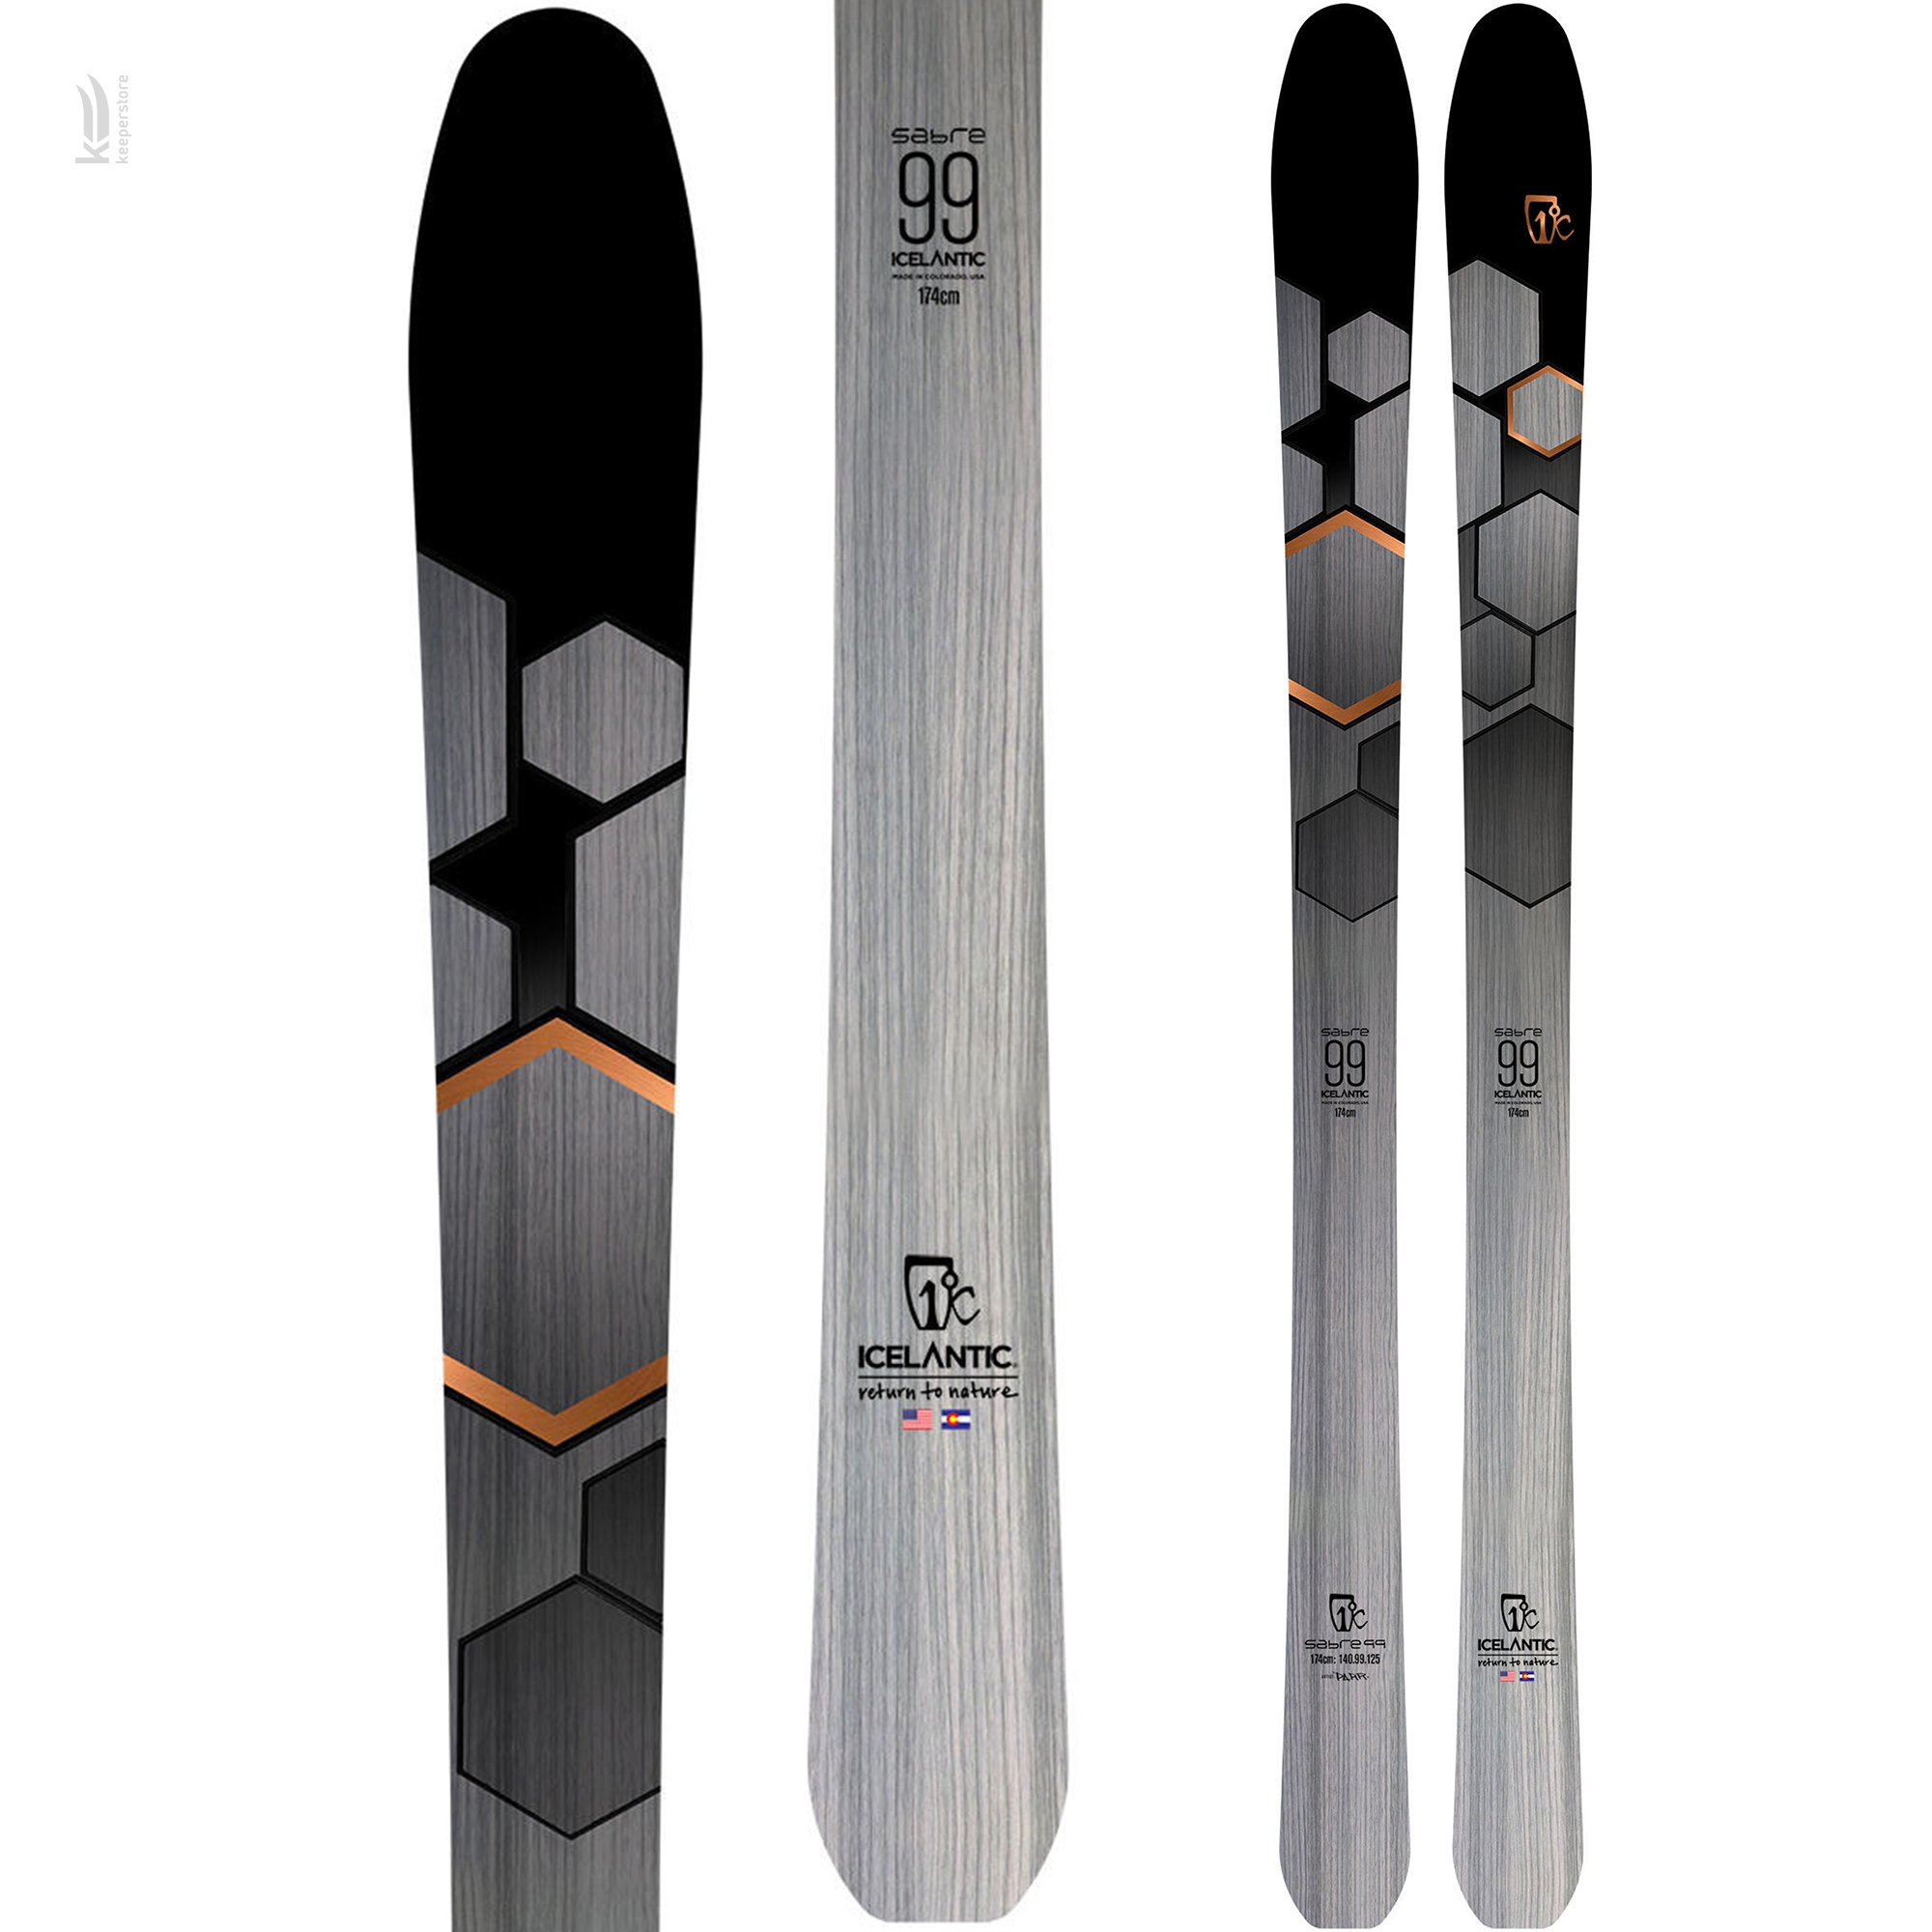 Горные лыжи Icelantic Sabre 99 2019/2020 174cm в интернет-магазине, главное фото